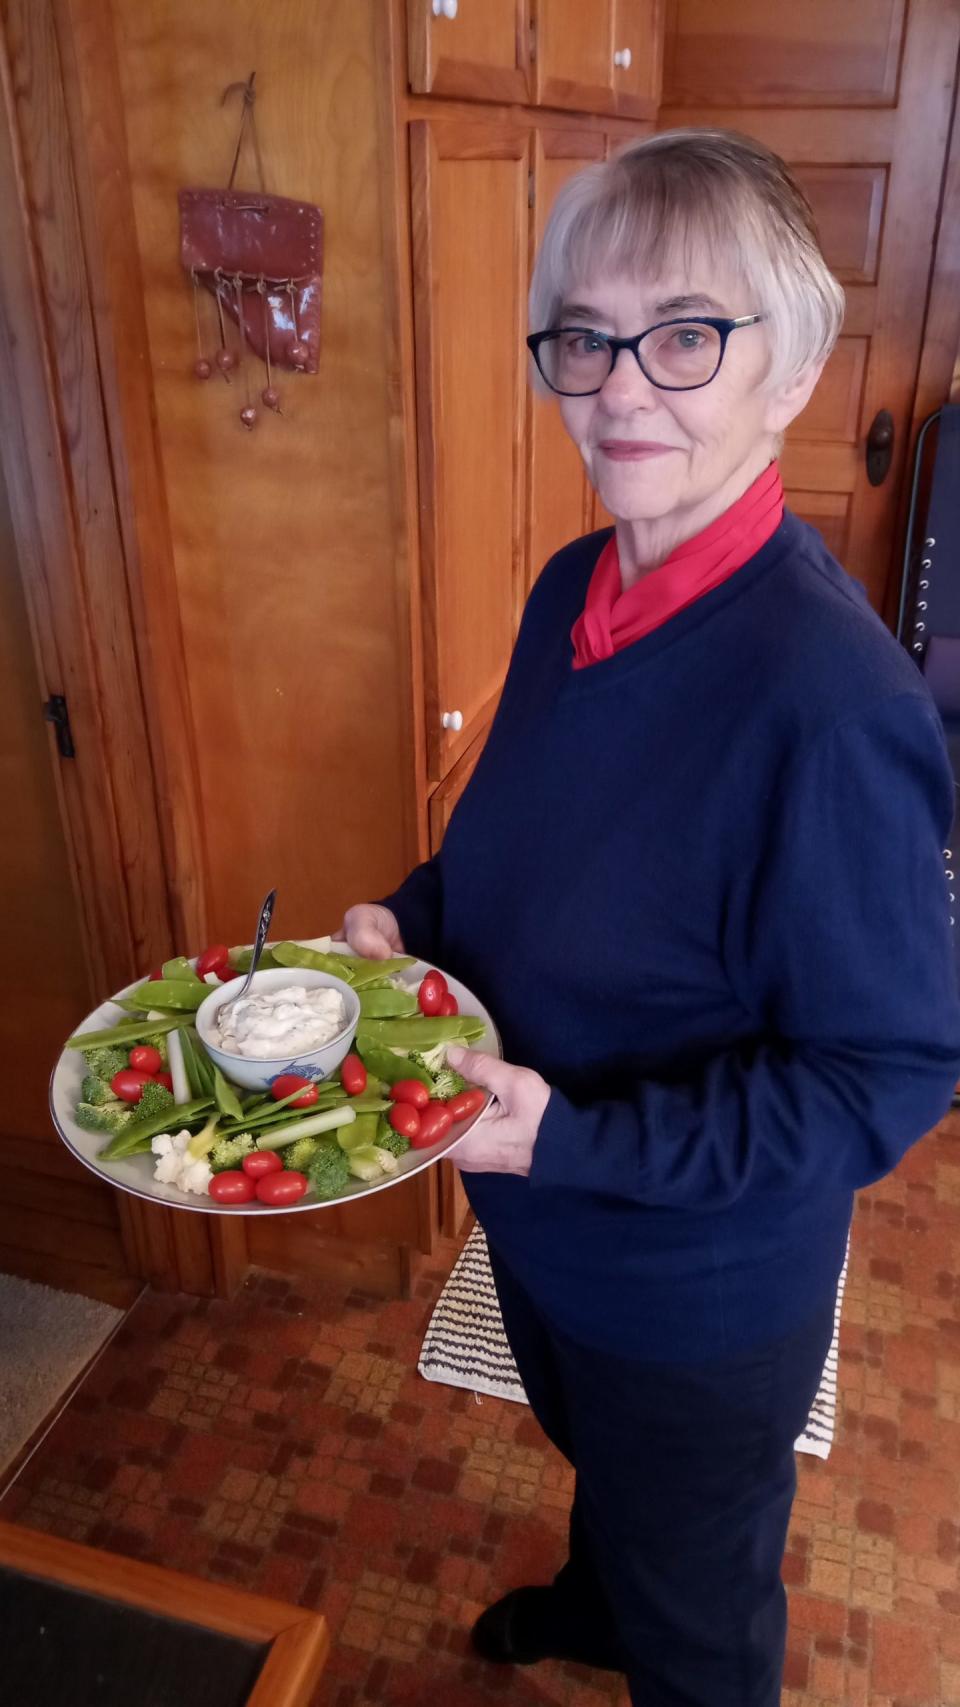 Der "Taco-Dienstag" ist für die 71-jährige Skinner eine Möglichkeit zur Pflege sozialer Kontakte. - Copyright: Susan Skinner